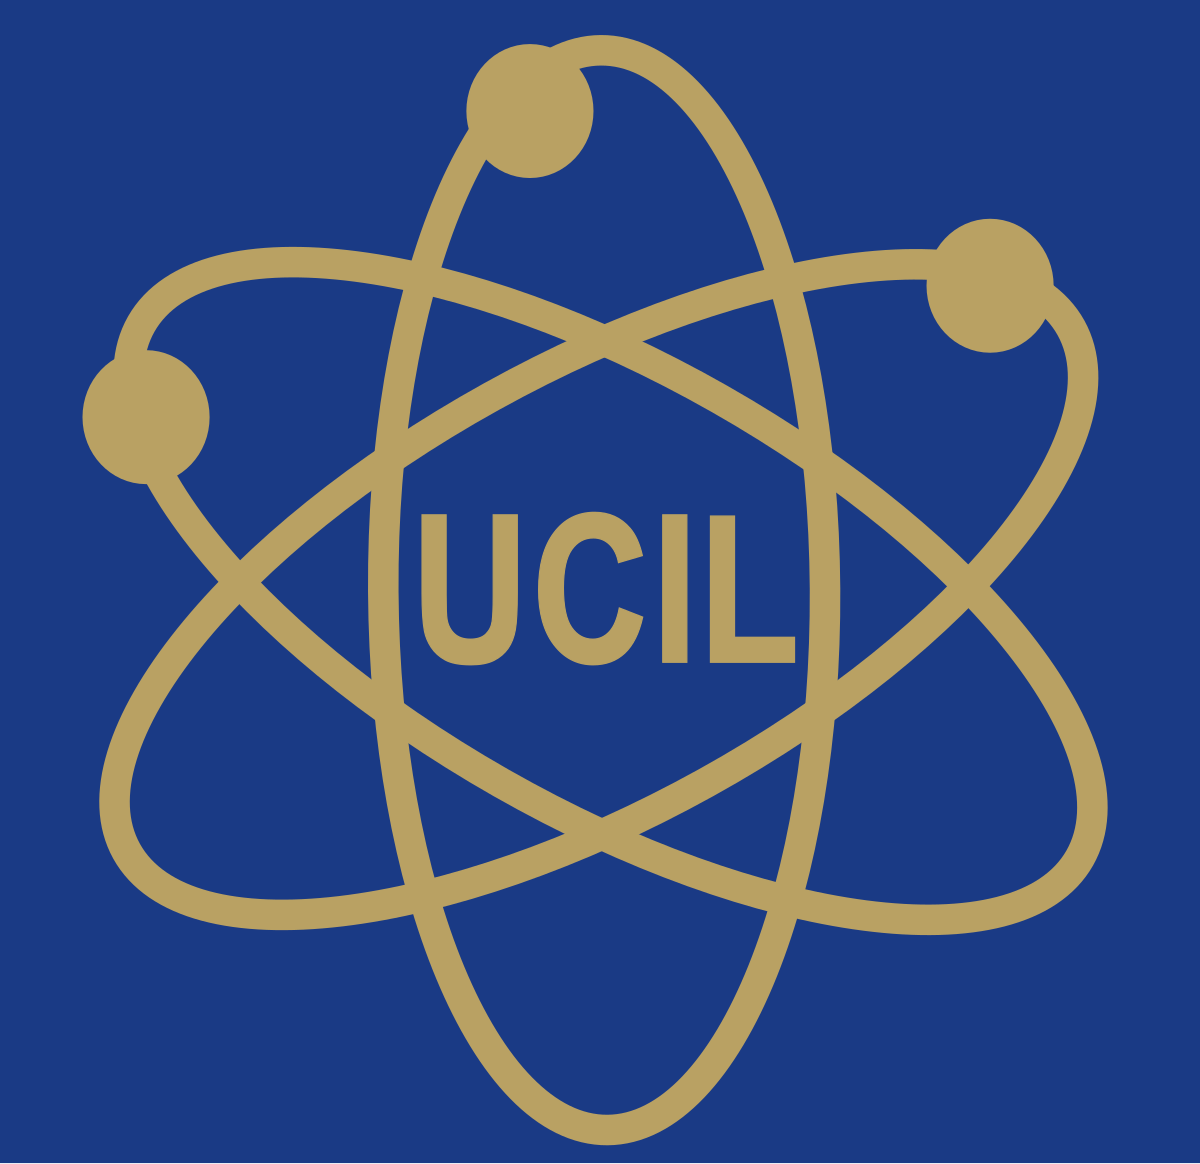 Индия уран. Уран логотип. Uranium one логотип. Атомная Энергетика. Ucil.